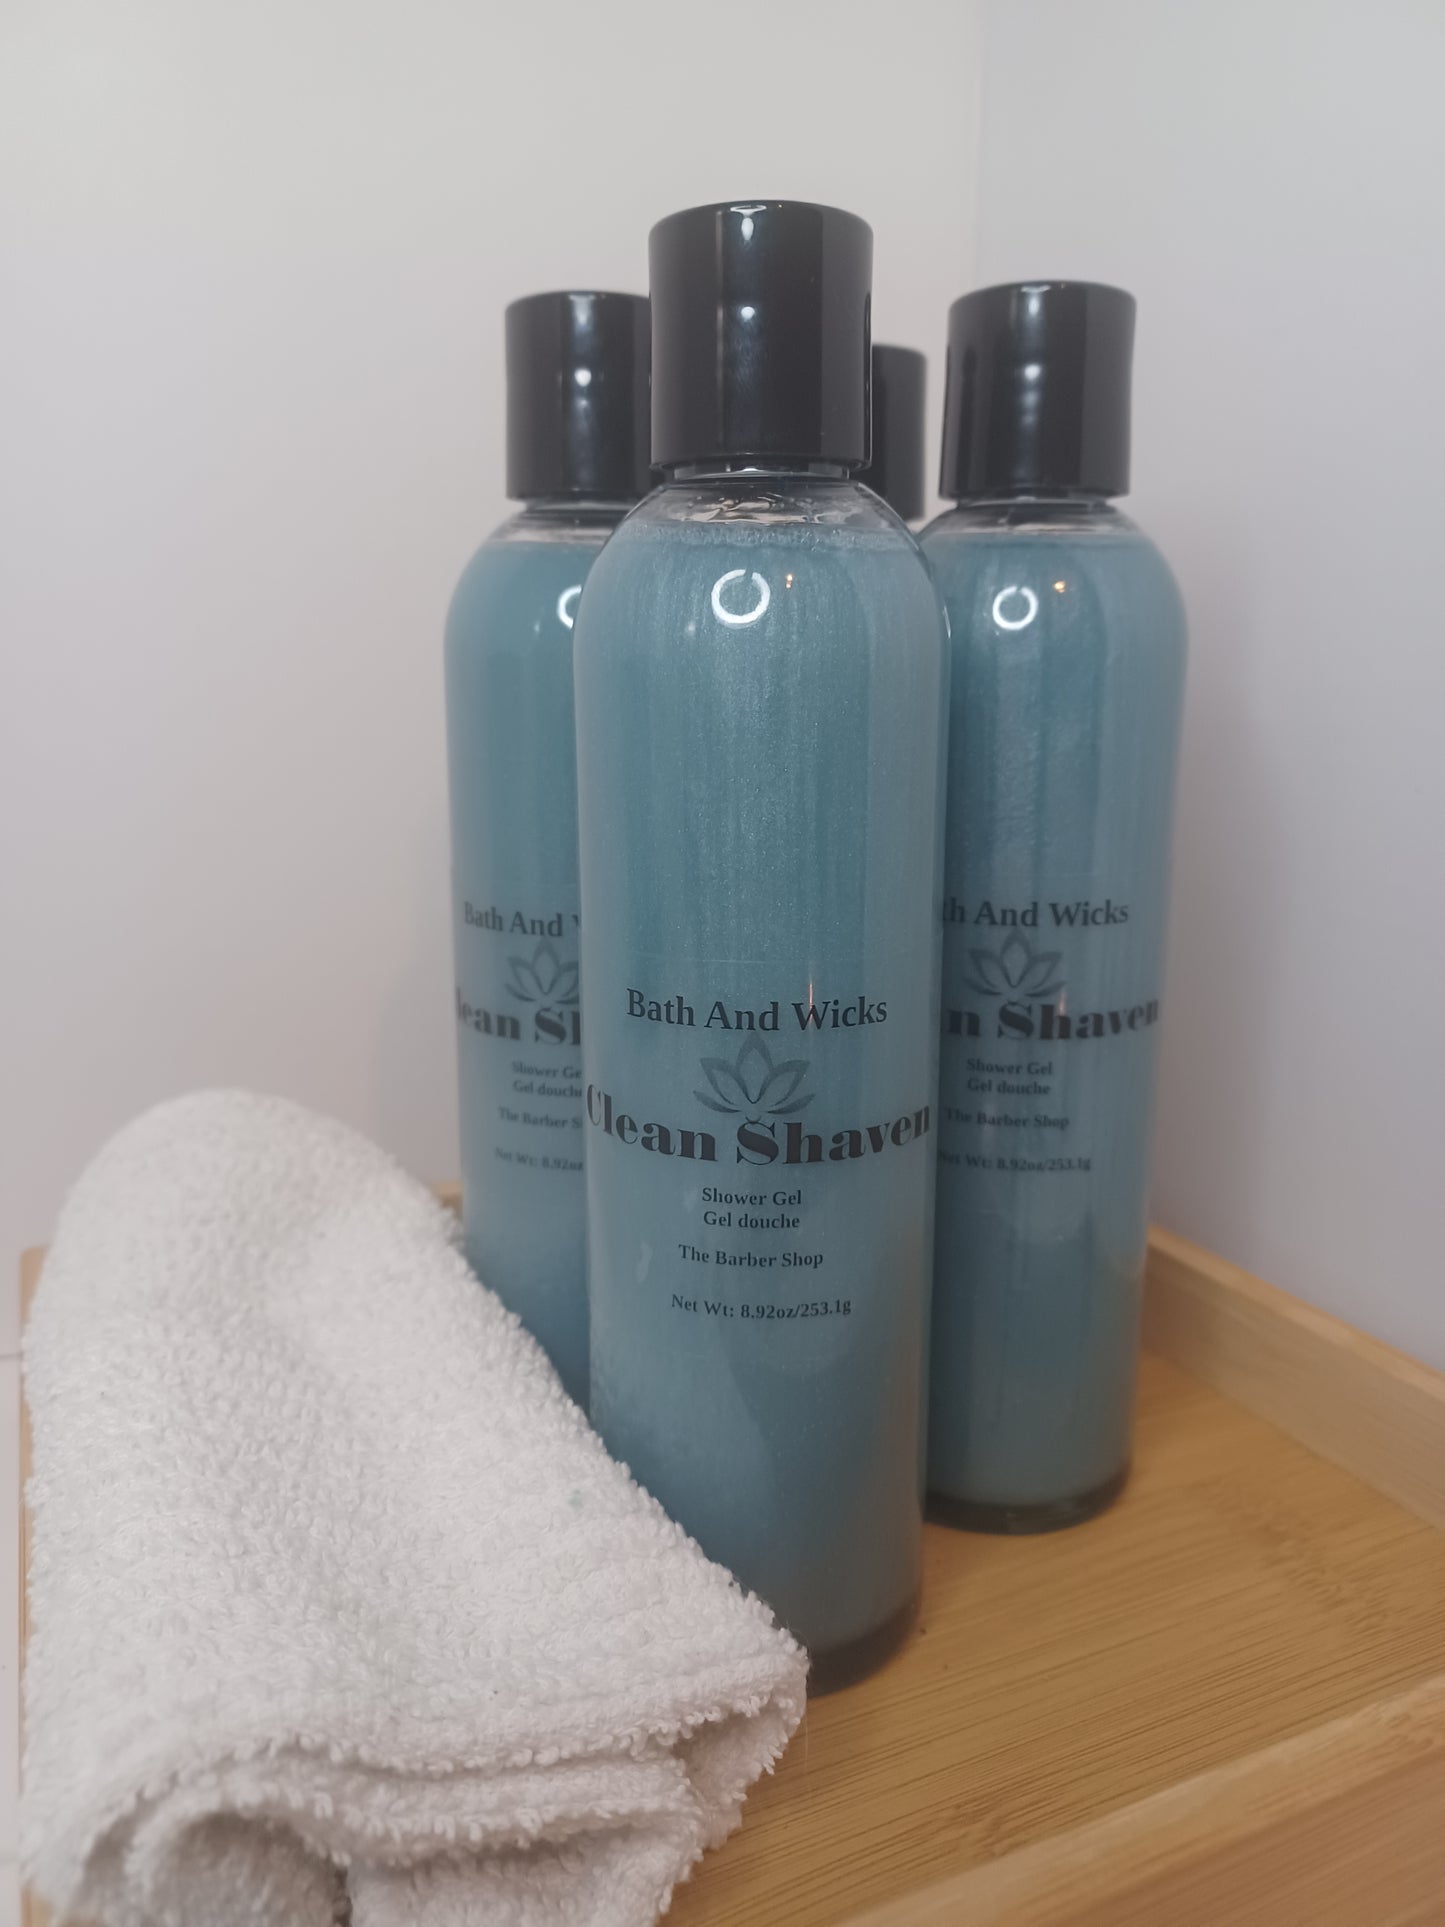 Clean Shaven Shower Gel